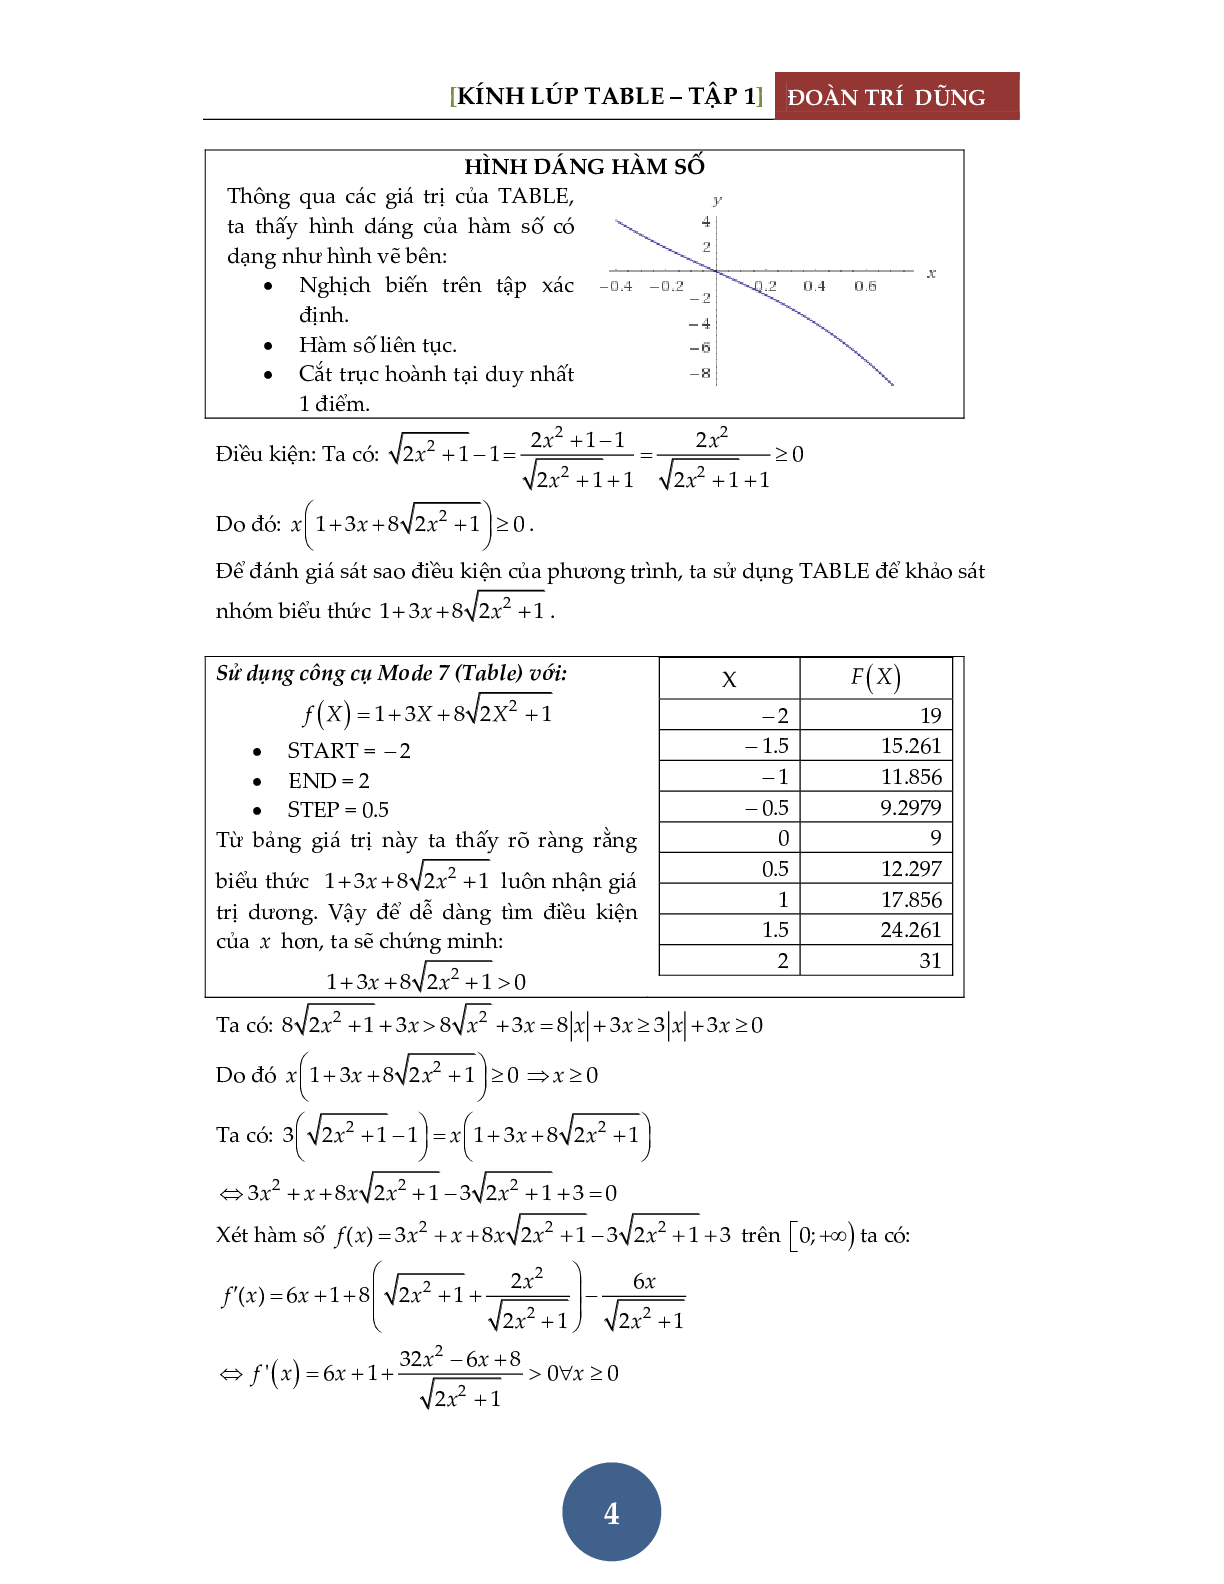 Giải phương trình bằng máy tính Casio – Đánh giá hàm đơn điệu (trang 5)